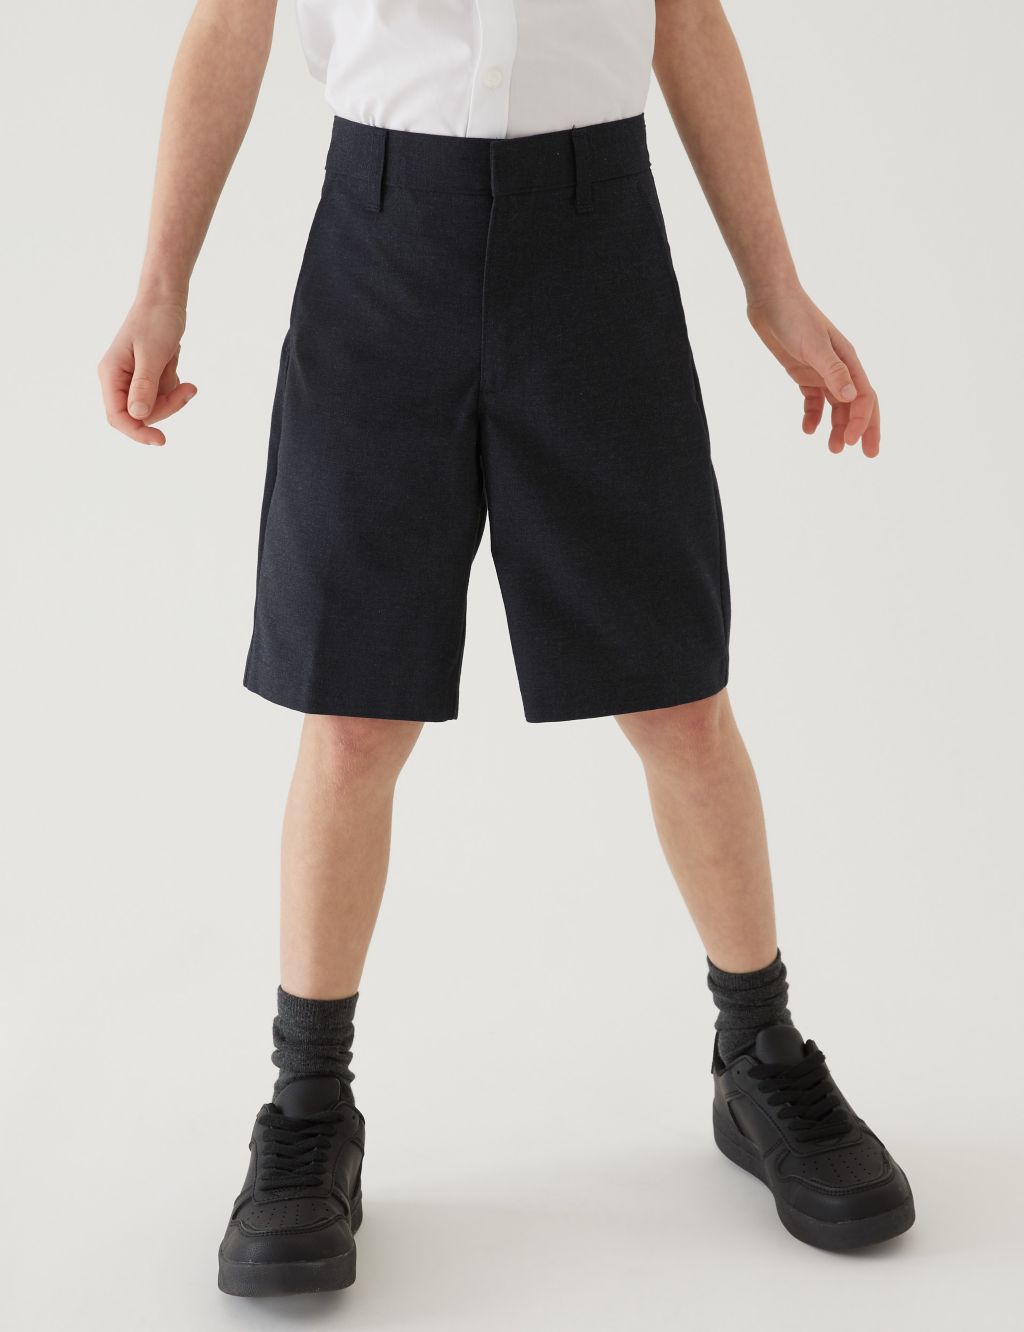 2pk Boys' Regular Leg School Shorts (2-14 Yrs) image 1